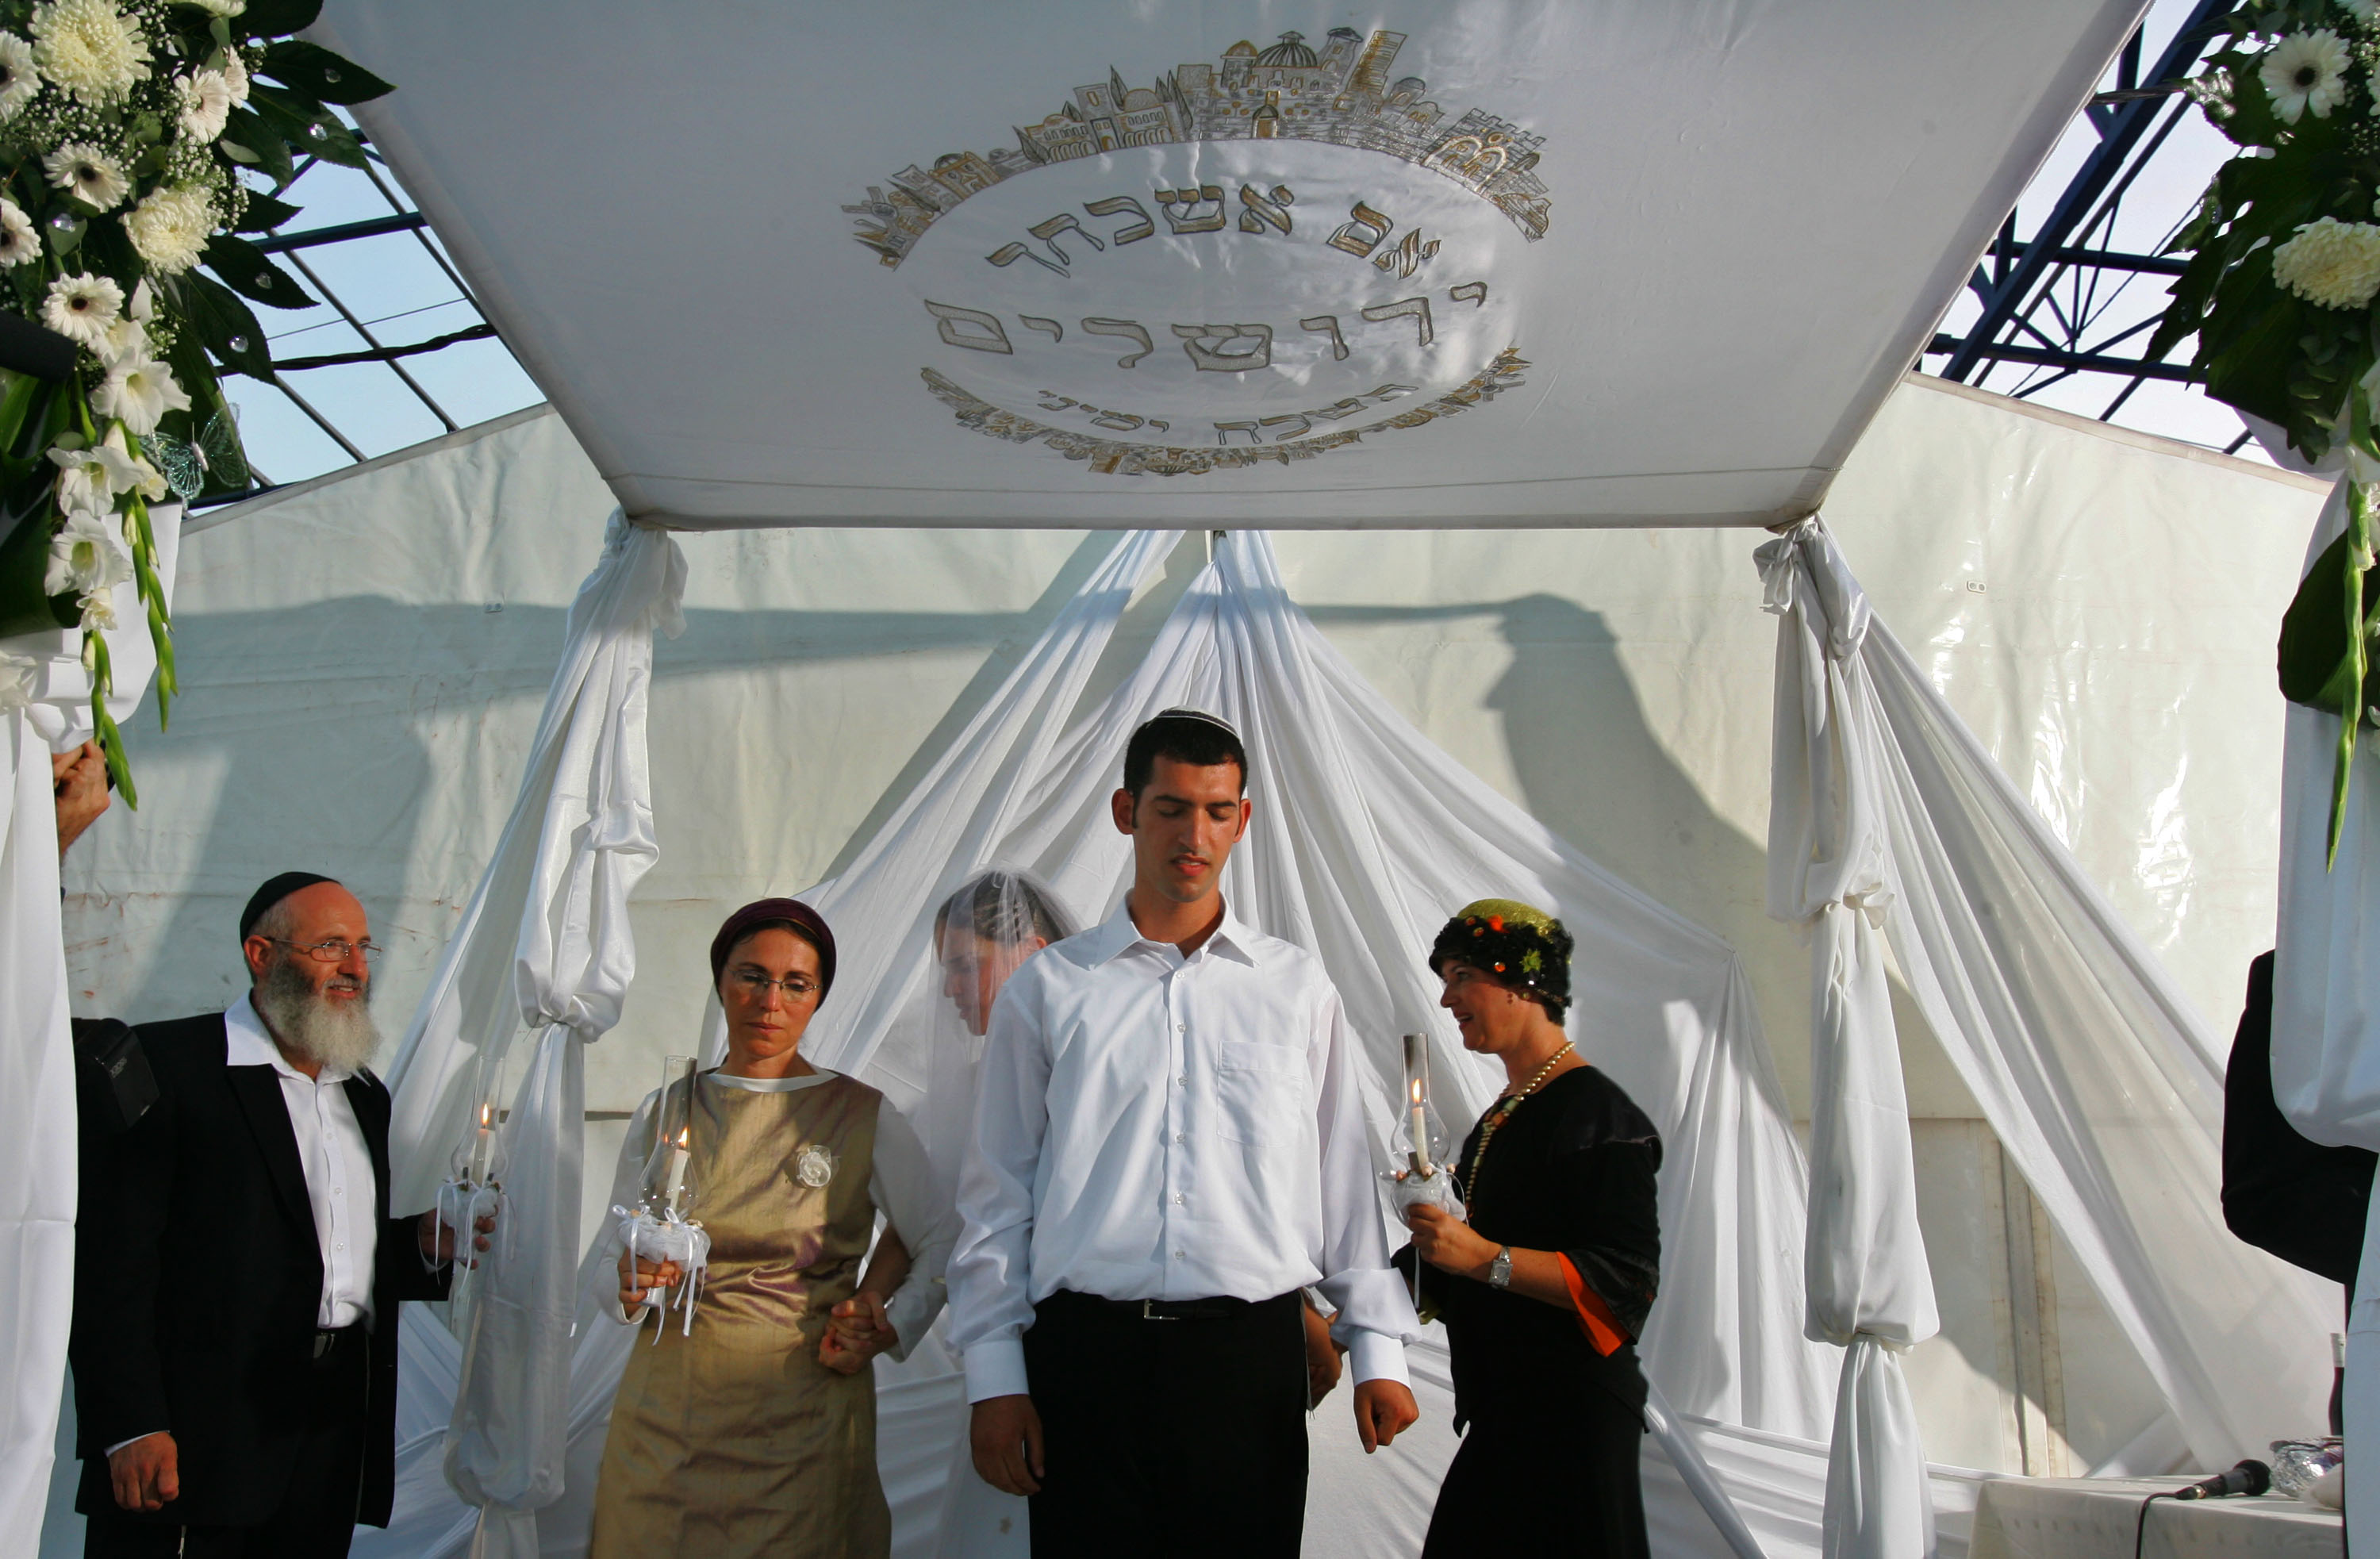 Rabbinic Blacklist in Israel Growing